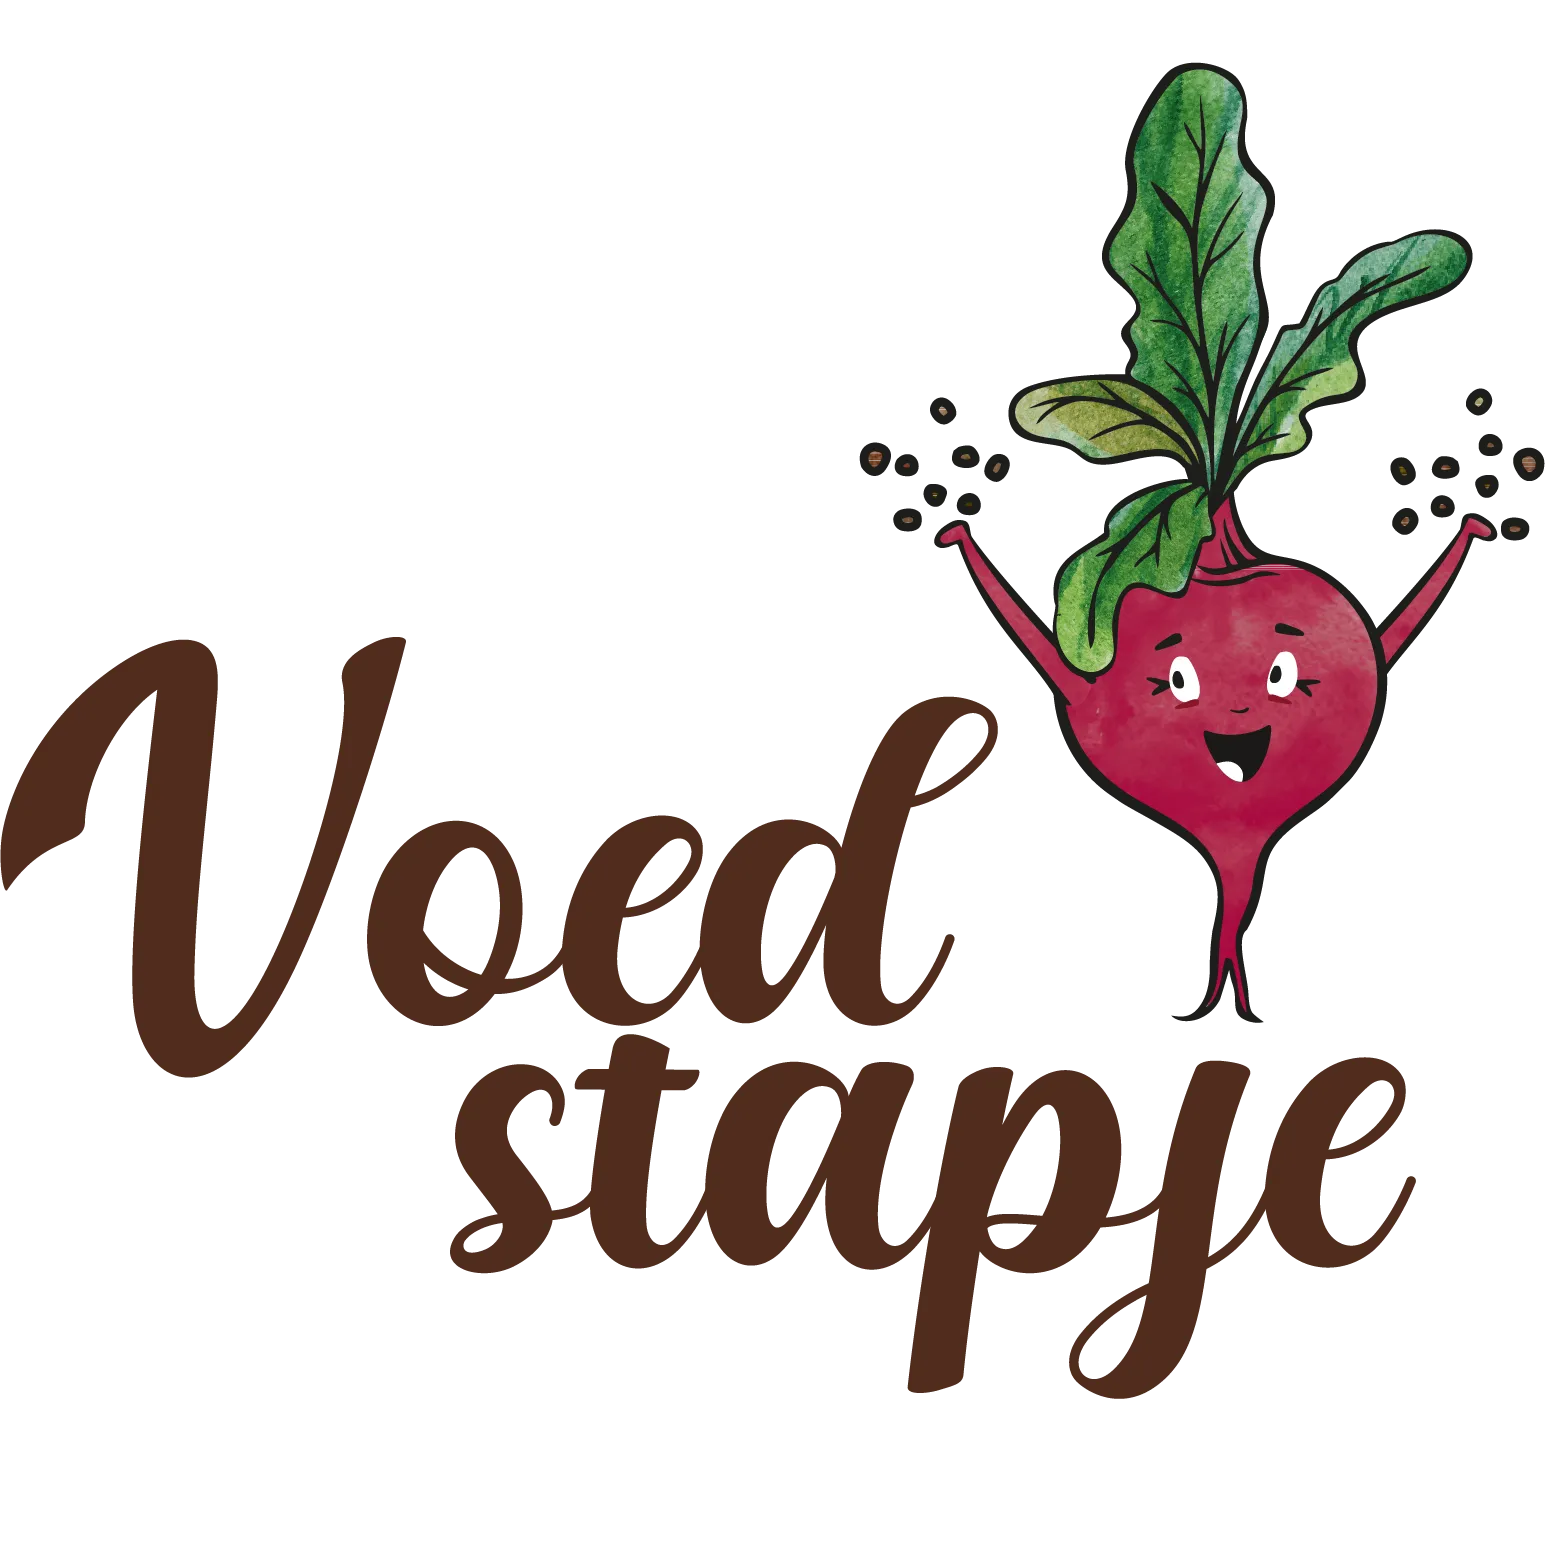 Voedstapje Logo